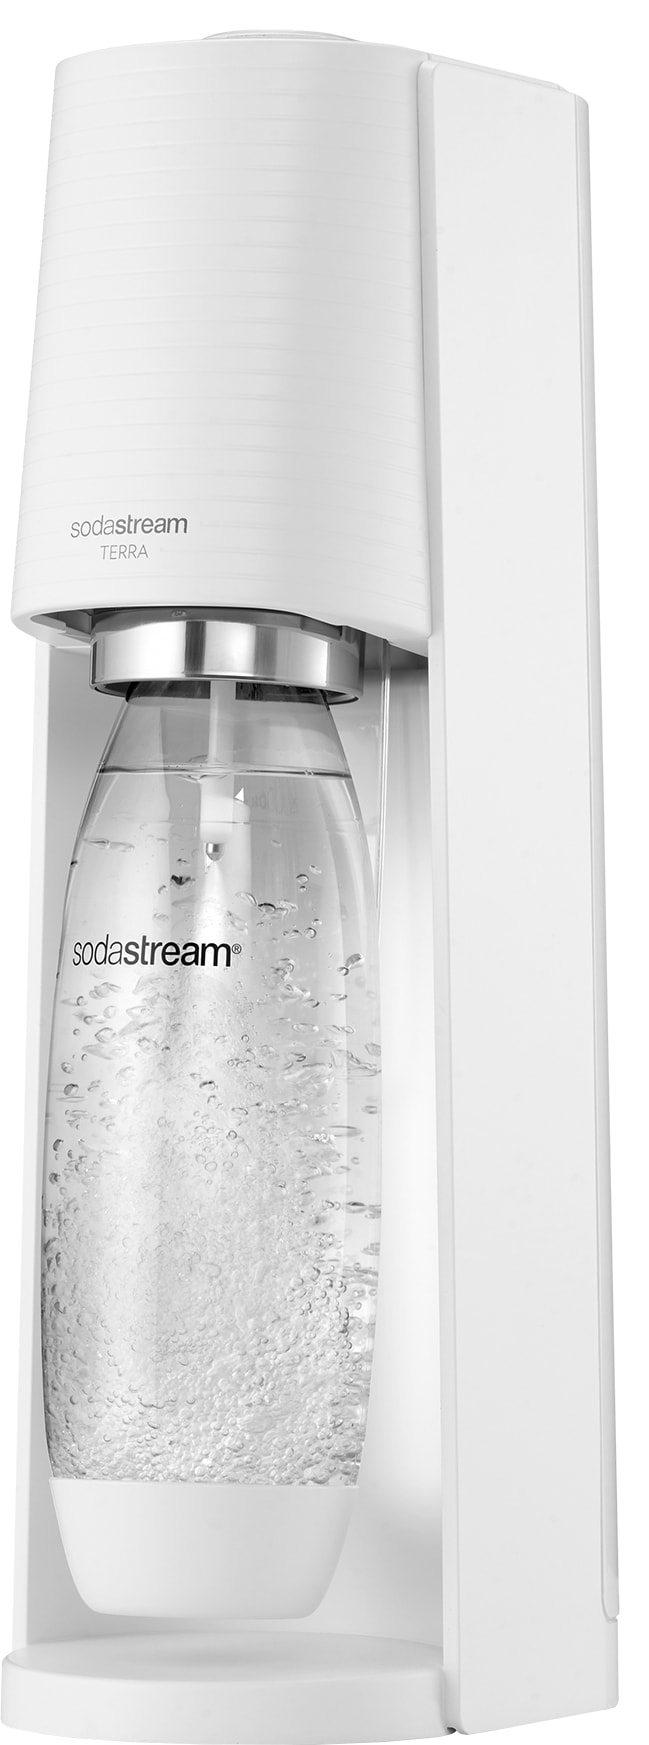 Sodastream - Elgiganten